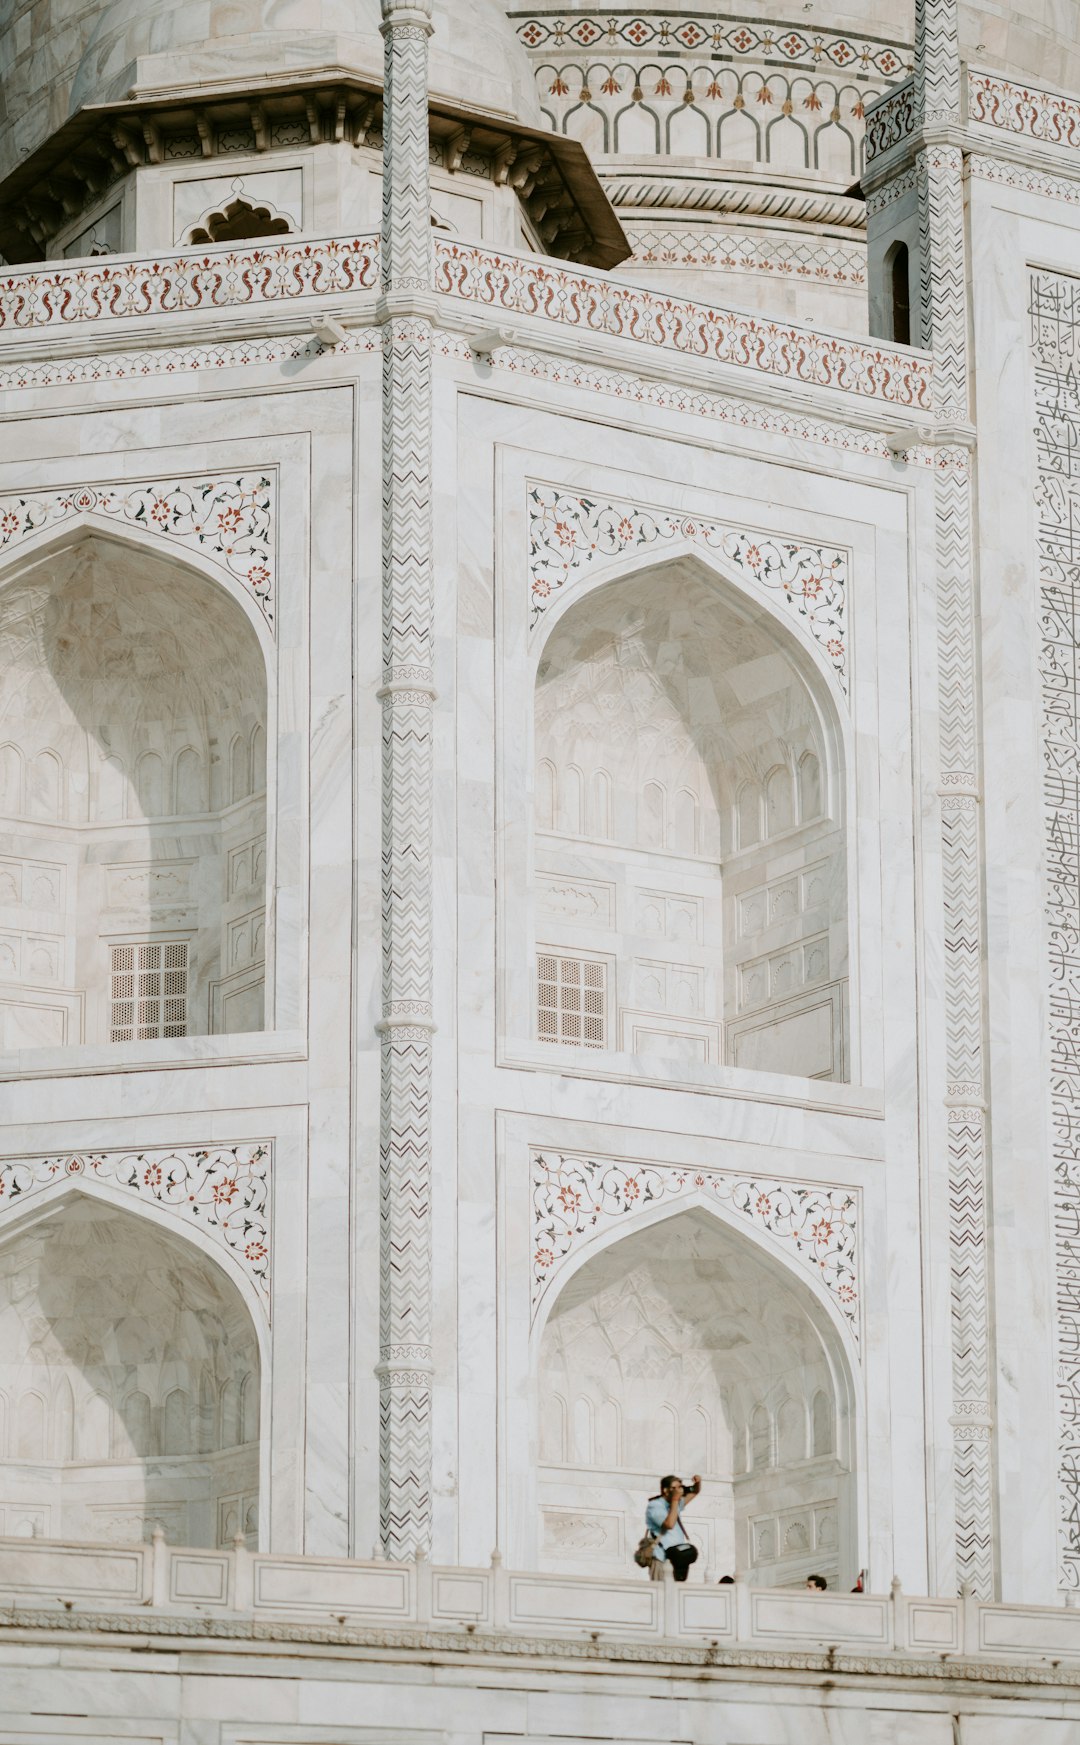 Mosque photo spot Taj Mahal Agra Fort